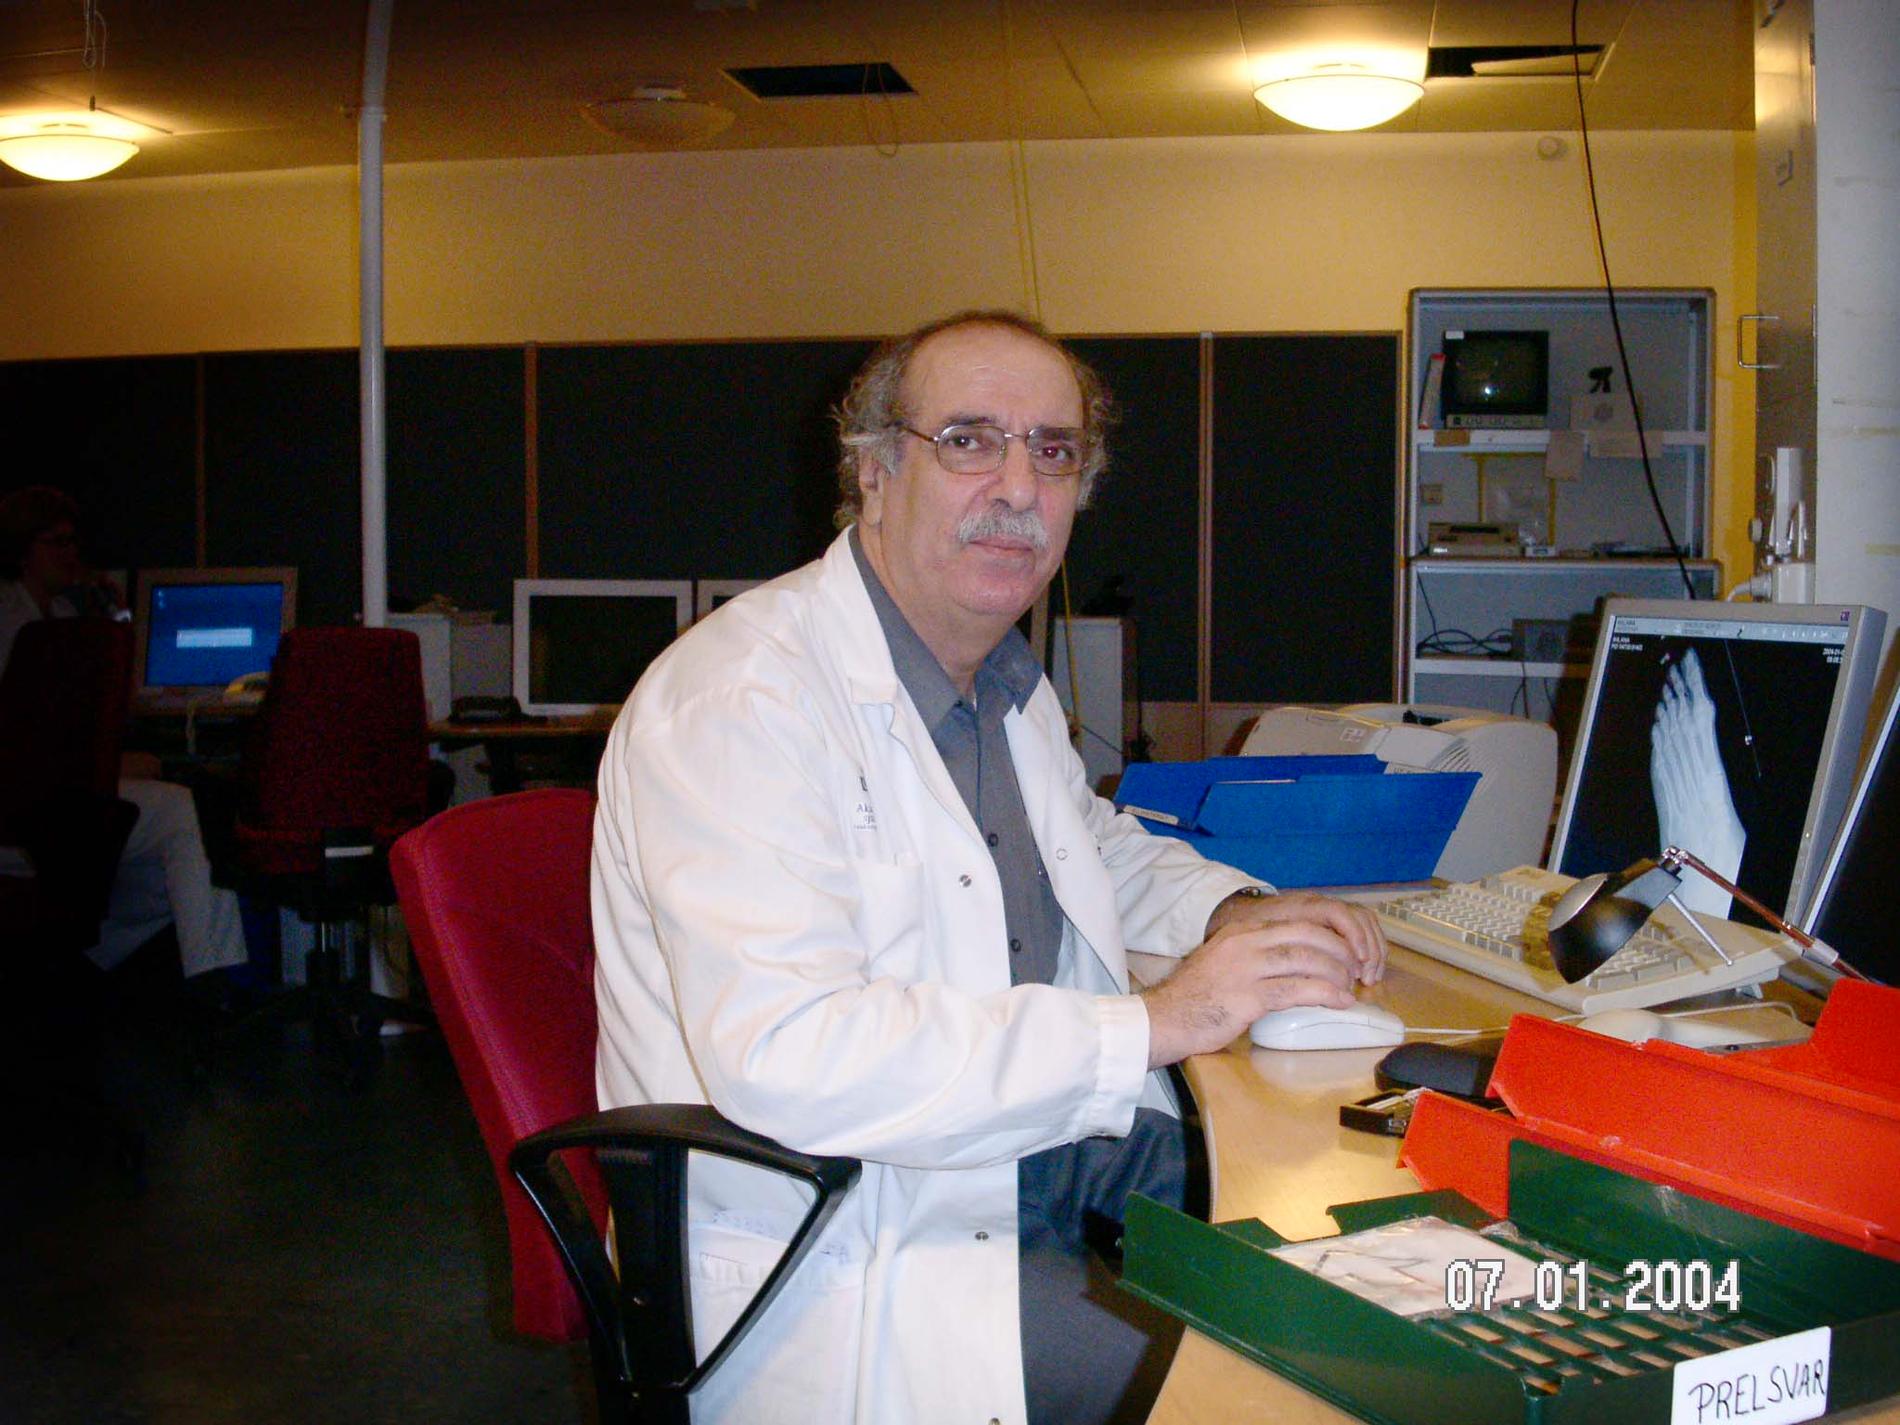 Mehmet Sirac Bilgin jobbade som röntgenläkare på Akademiska sjukhuset i Uppsala. Bilden är från 2004.